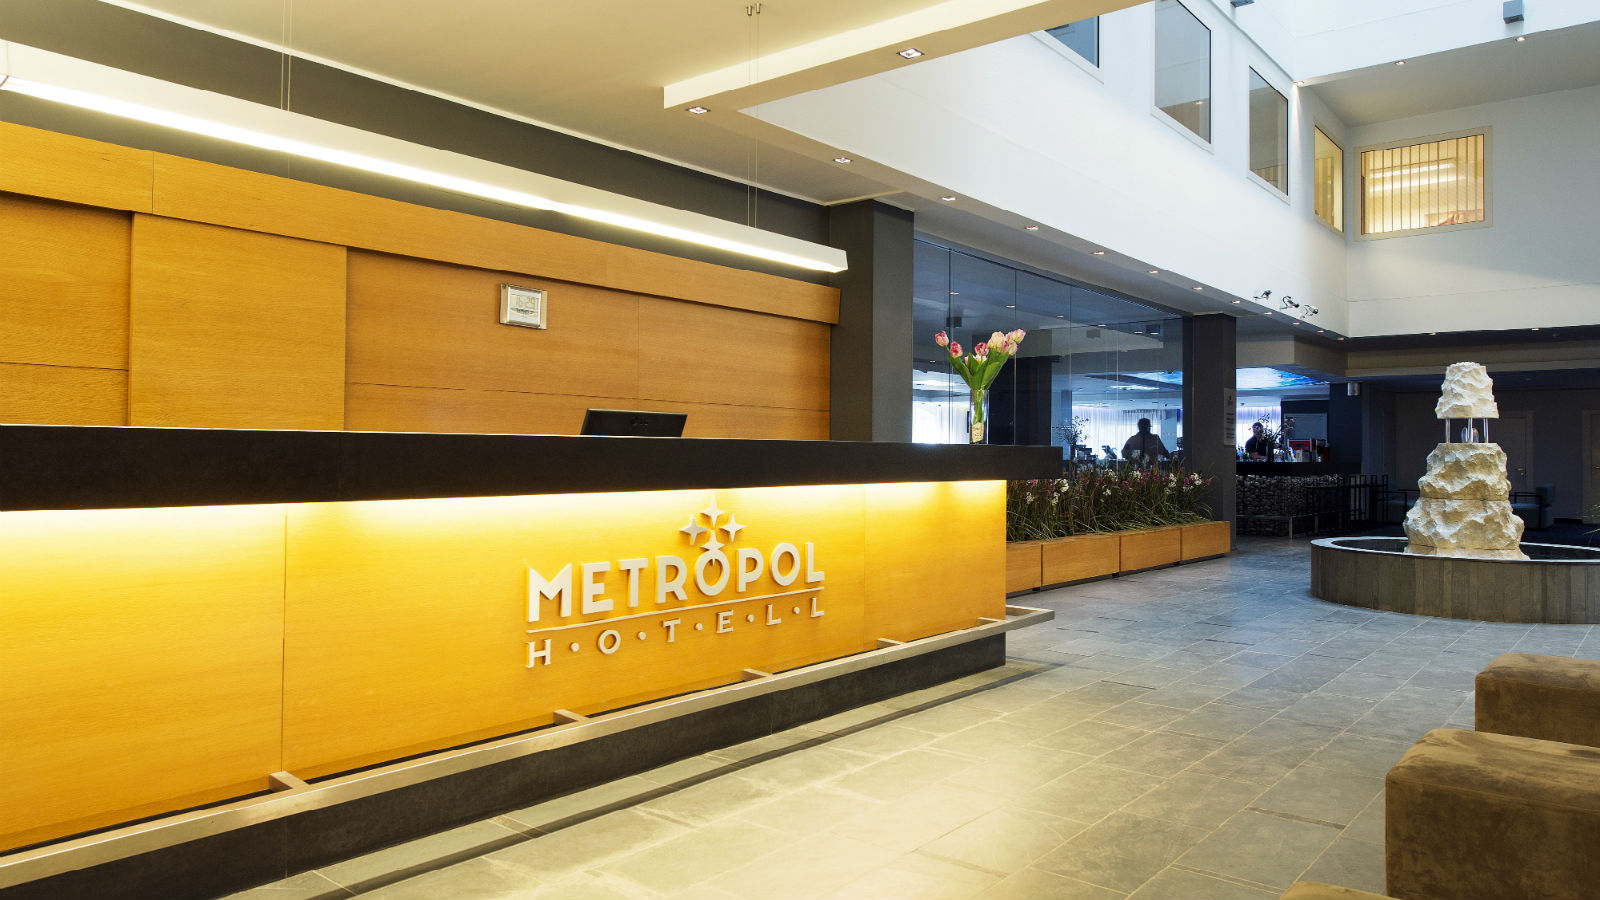 Деловой Завтрак состоится в отеле “Метрополь” 02 декабря 2016 года.